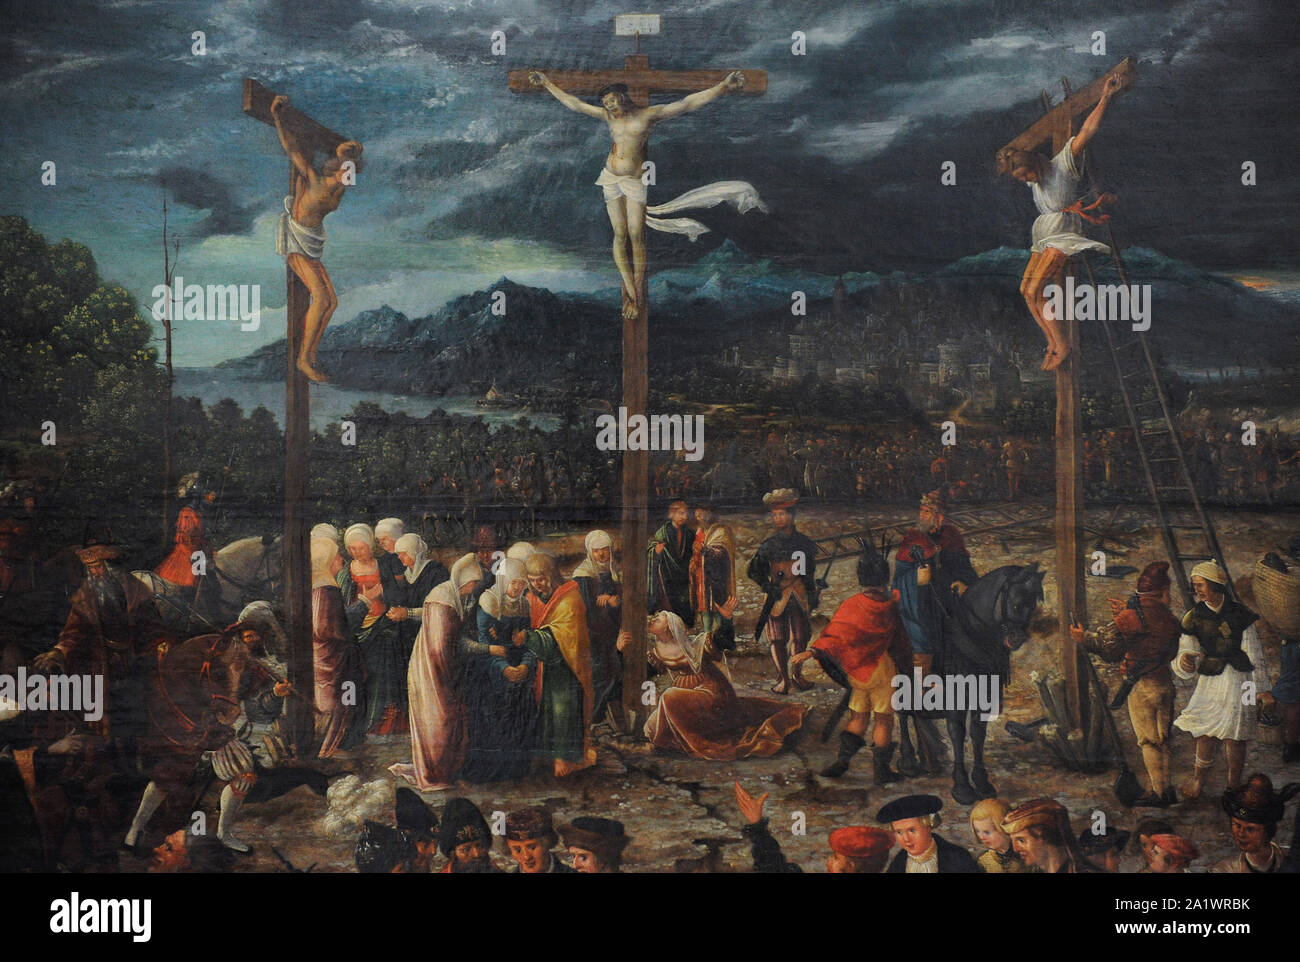 Hans Muelich ou Mielich (1516-1573). Peintre allemand. Crucifixion, 1539. Détail. San Fernando Académie Royale des Beaux-arts de Madrid. L'Espagne. Banque D'Images